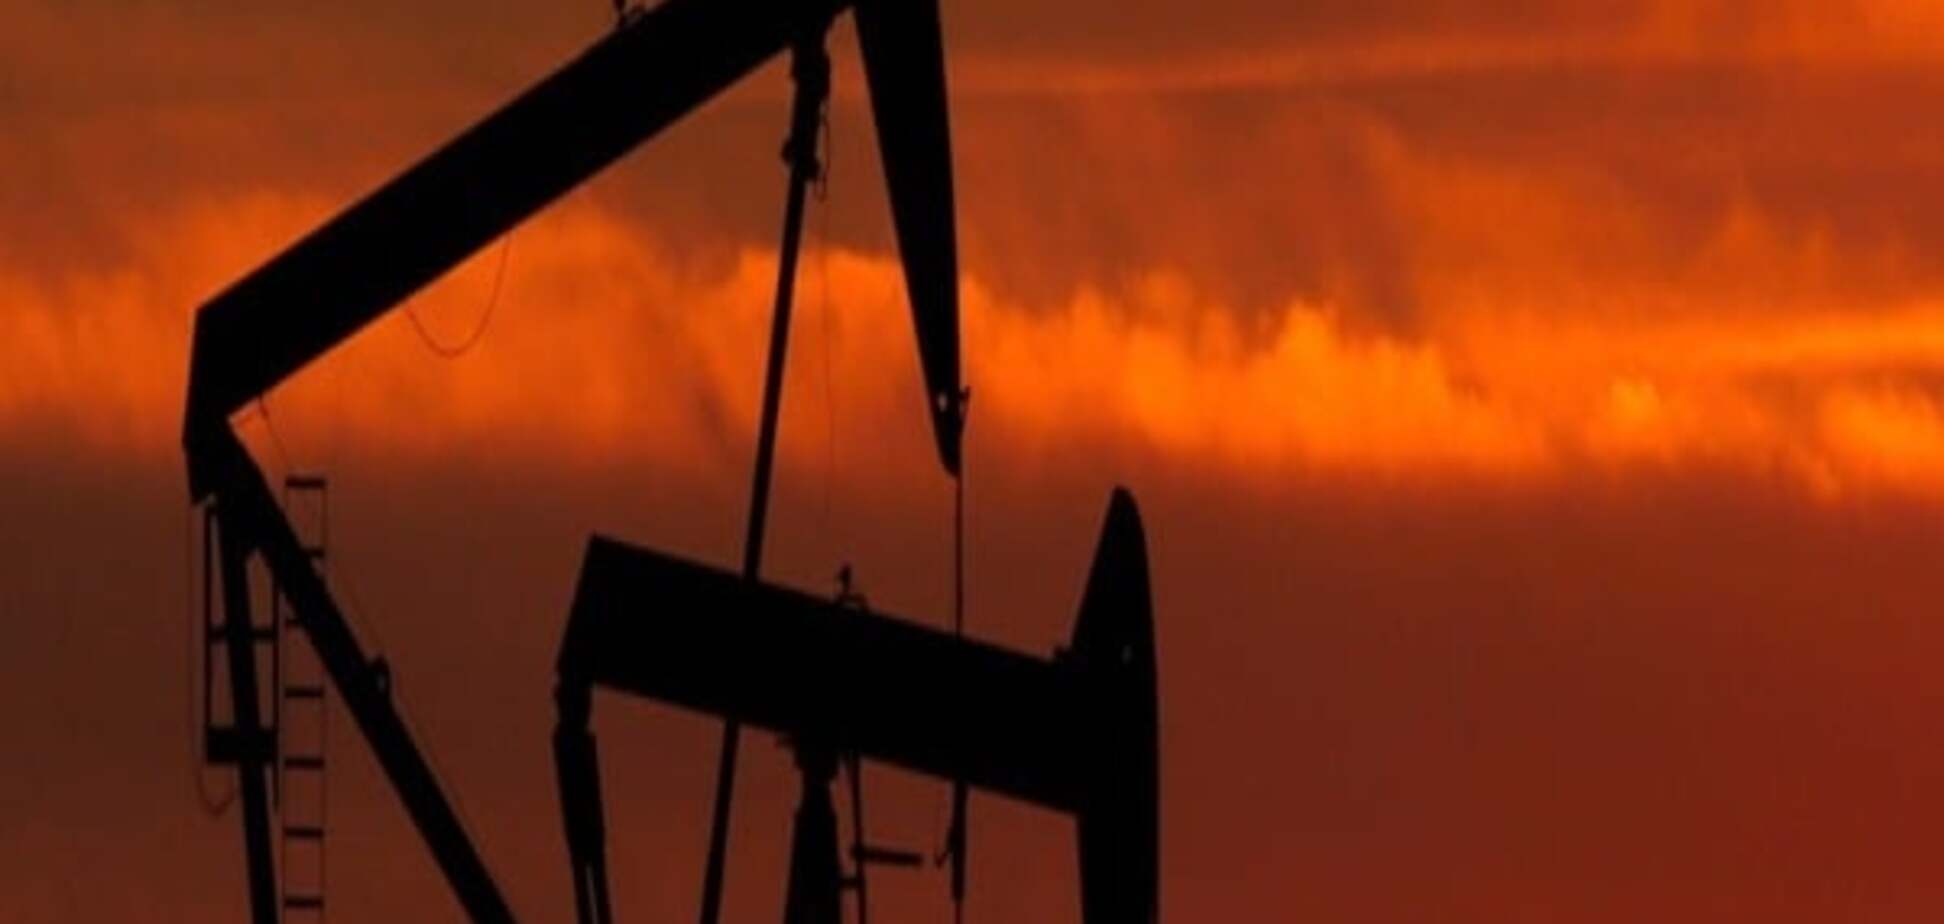 Нафта пережила шок багаторічного падіння